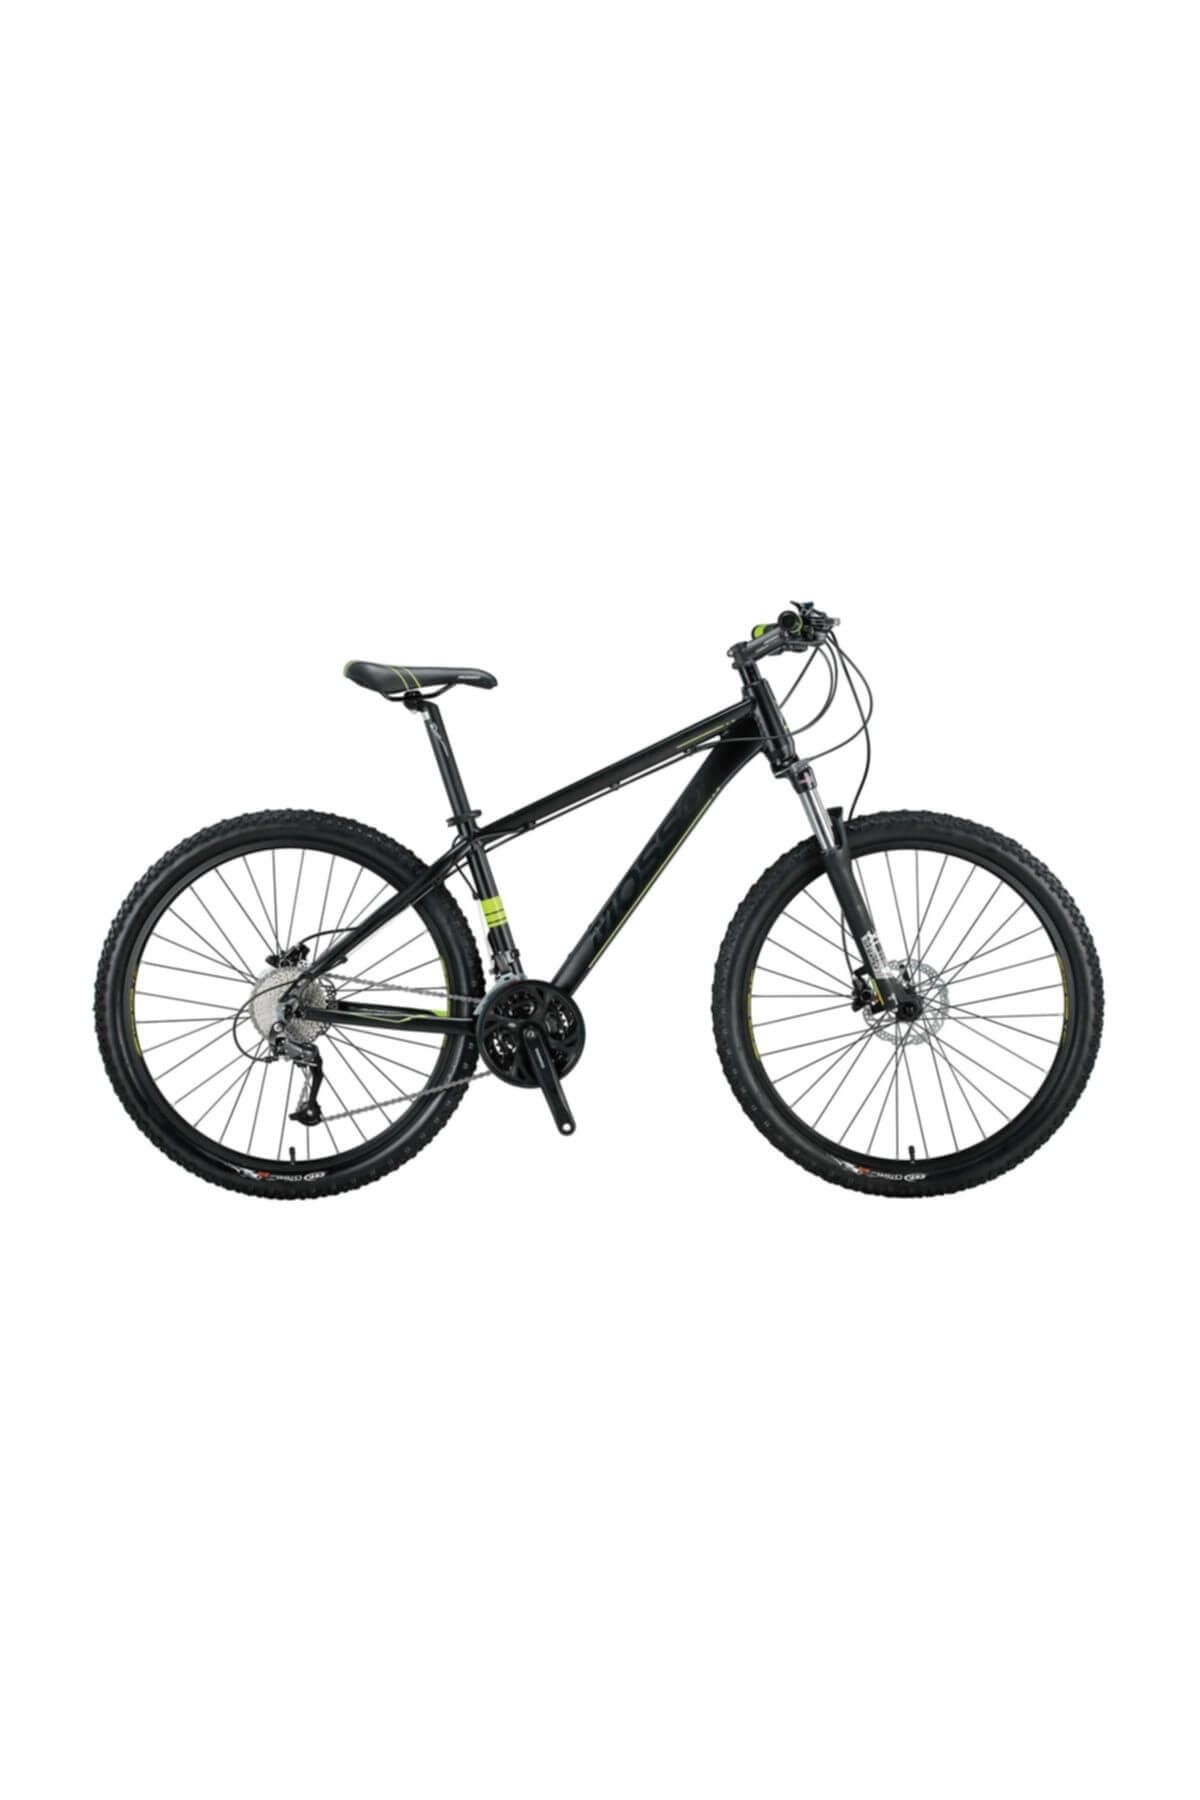 Mosso Blackedition 27 Vites Altus 27.5 Jant Bisiklet 2018 Model A94 20" SİYAH (LİME)